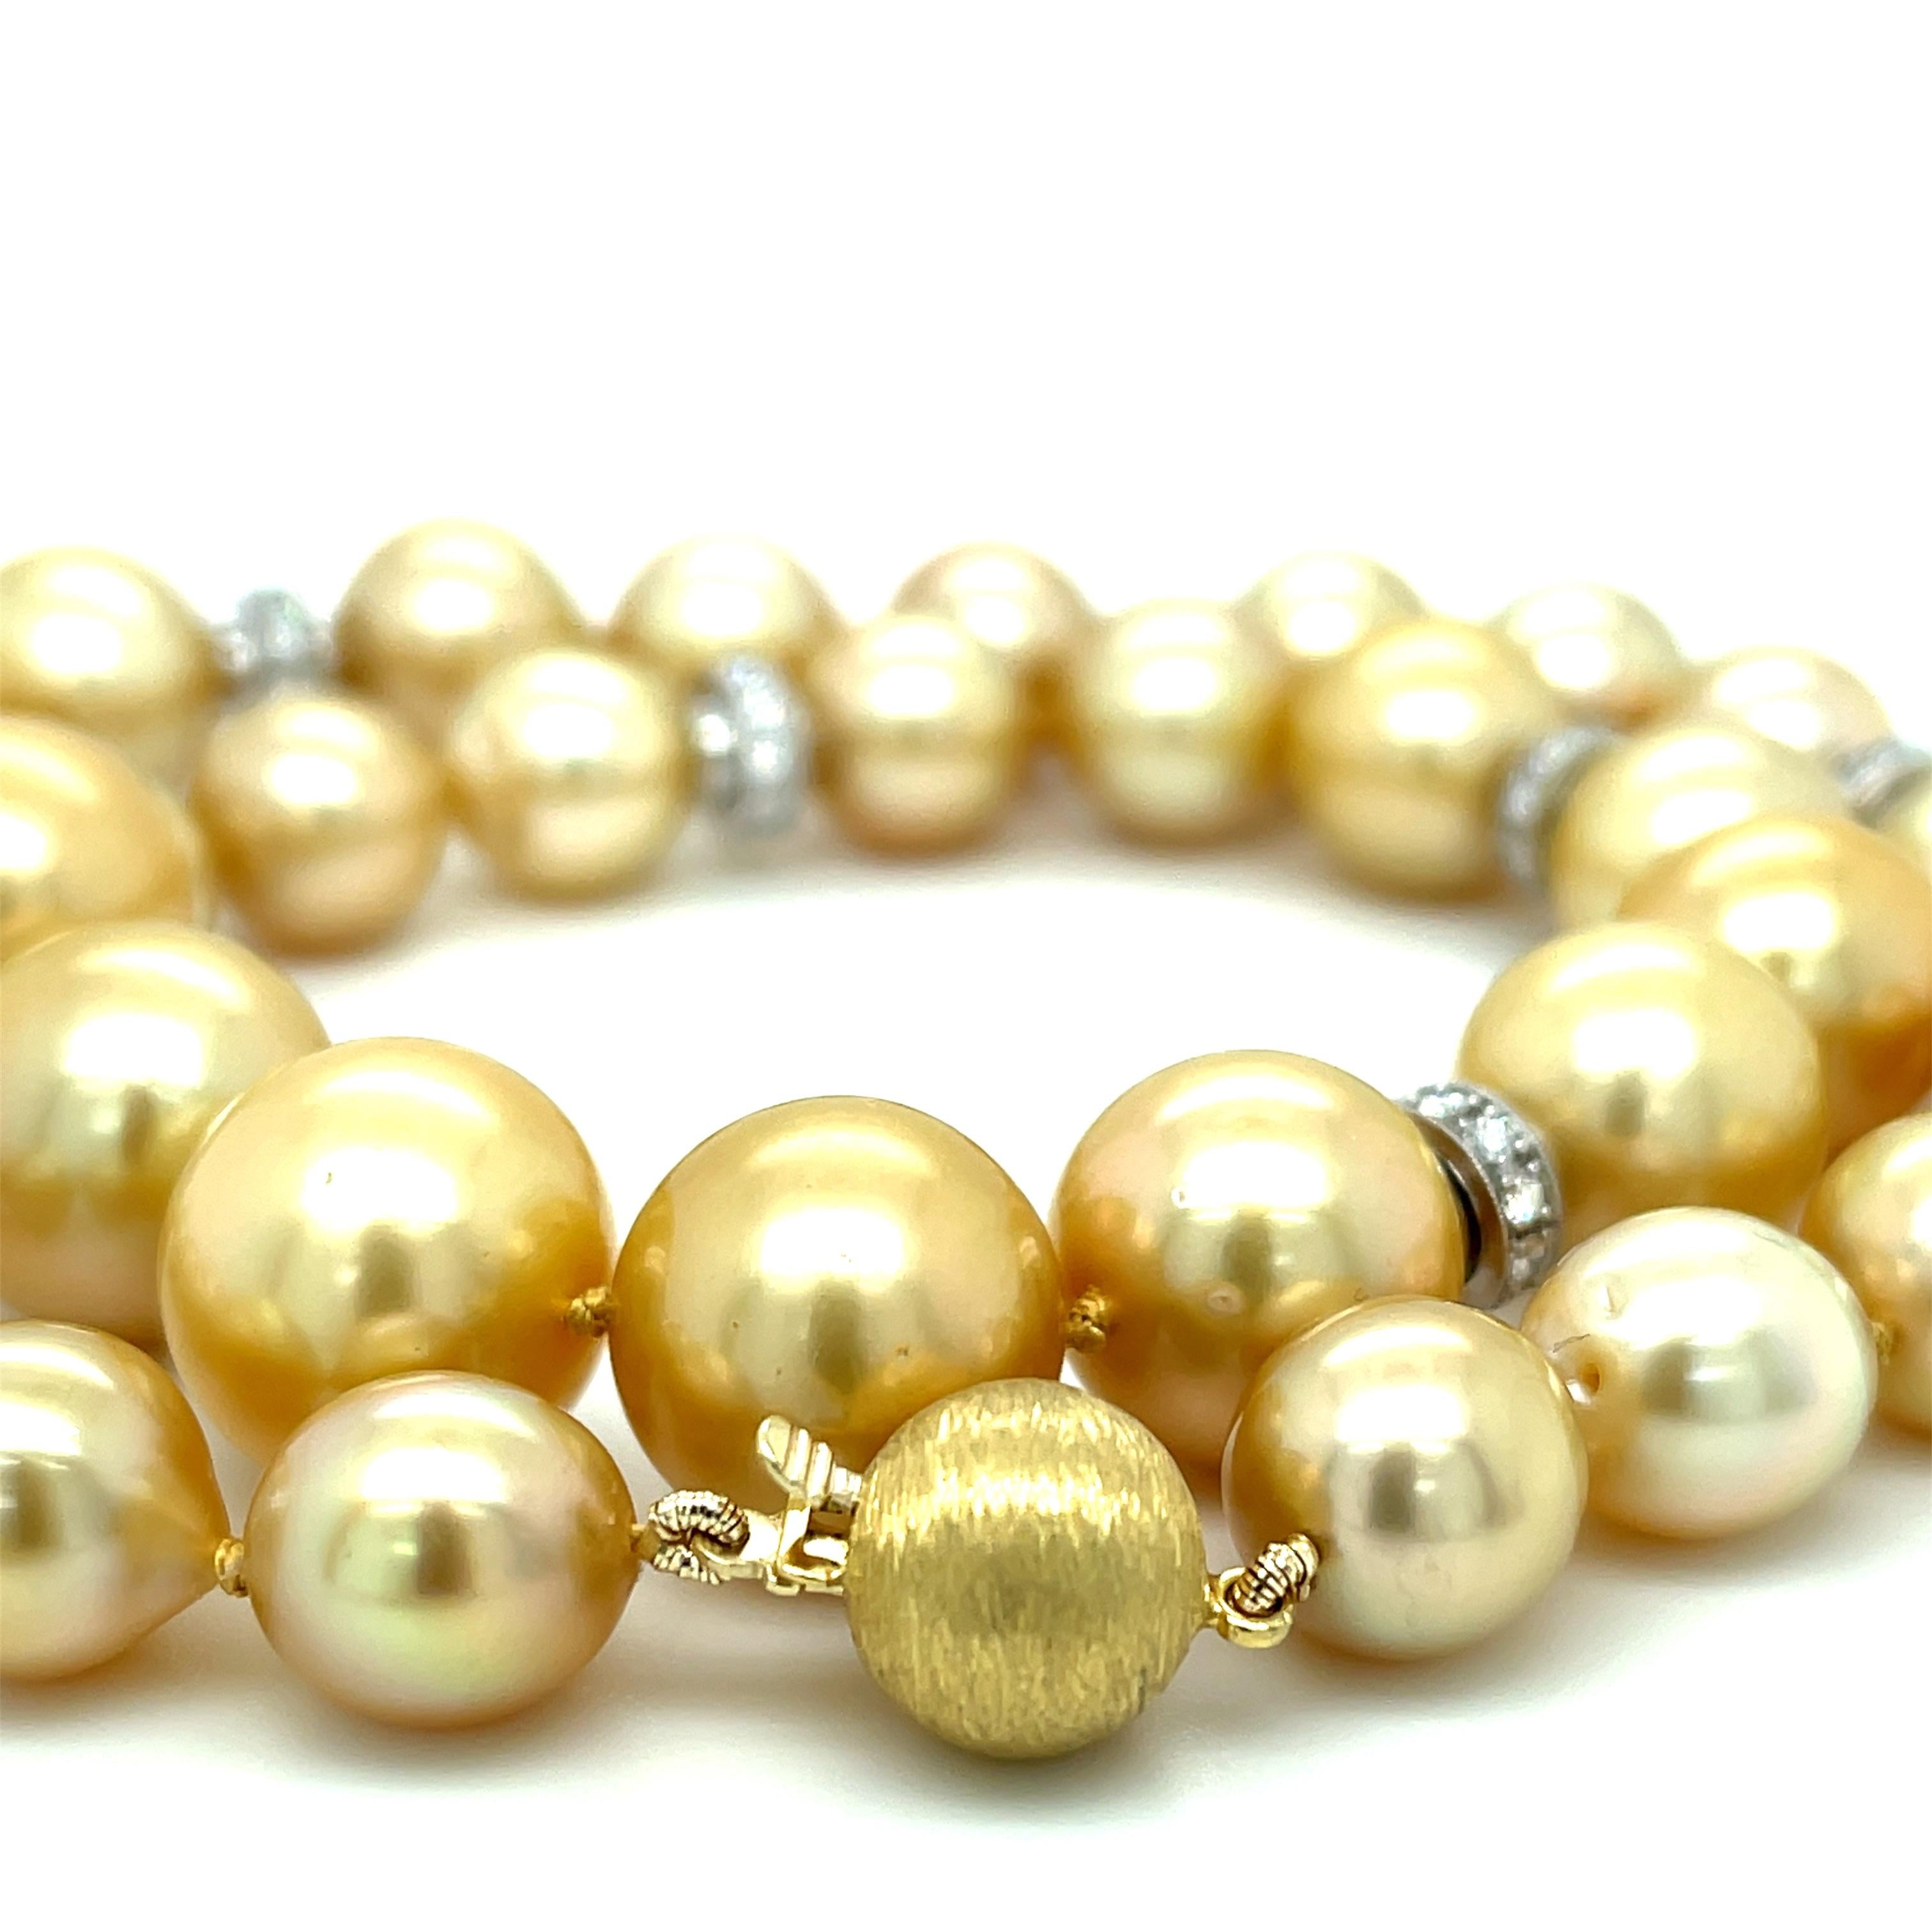 Diese wunderschöne Perlenkette besteht aus fünfunddreißig goldenen Südseeperlen, die aufgrund ihrer Größe, ihrer ungewöhnlichen Farben und ihres schönen Glanzes sehr geschätzt werden. Dies ist eine besonders schöne Kollektion von Perlen mit